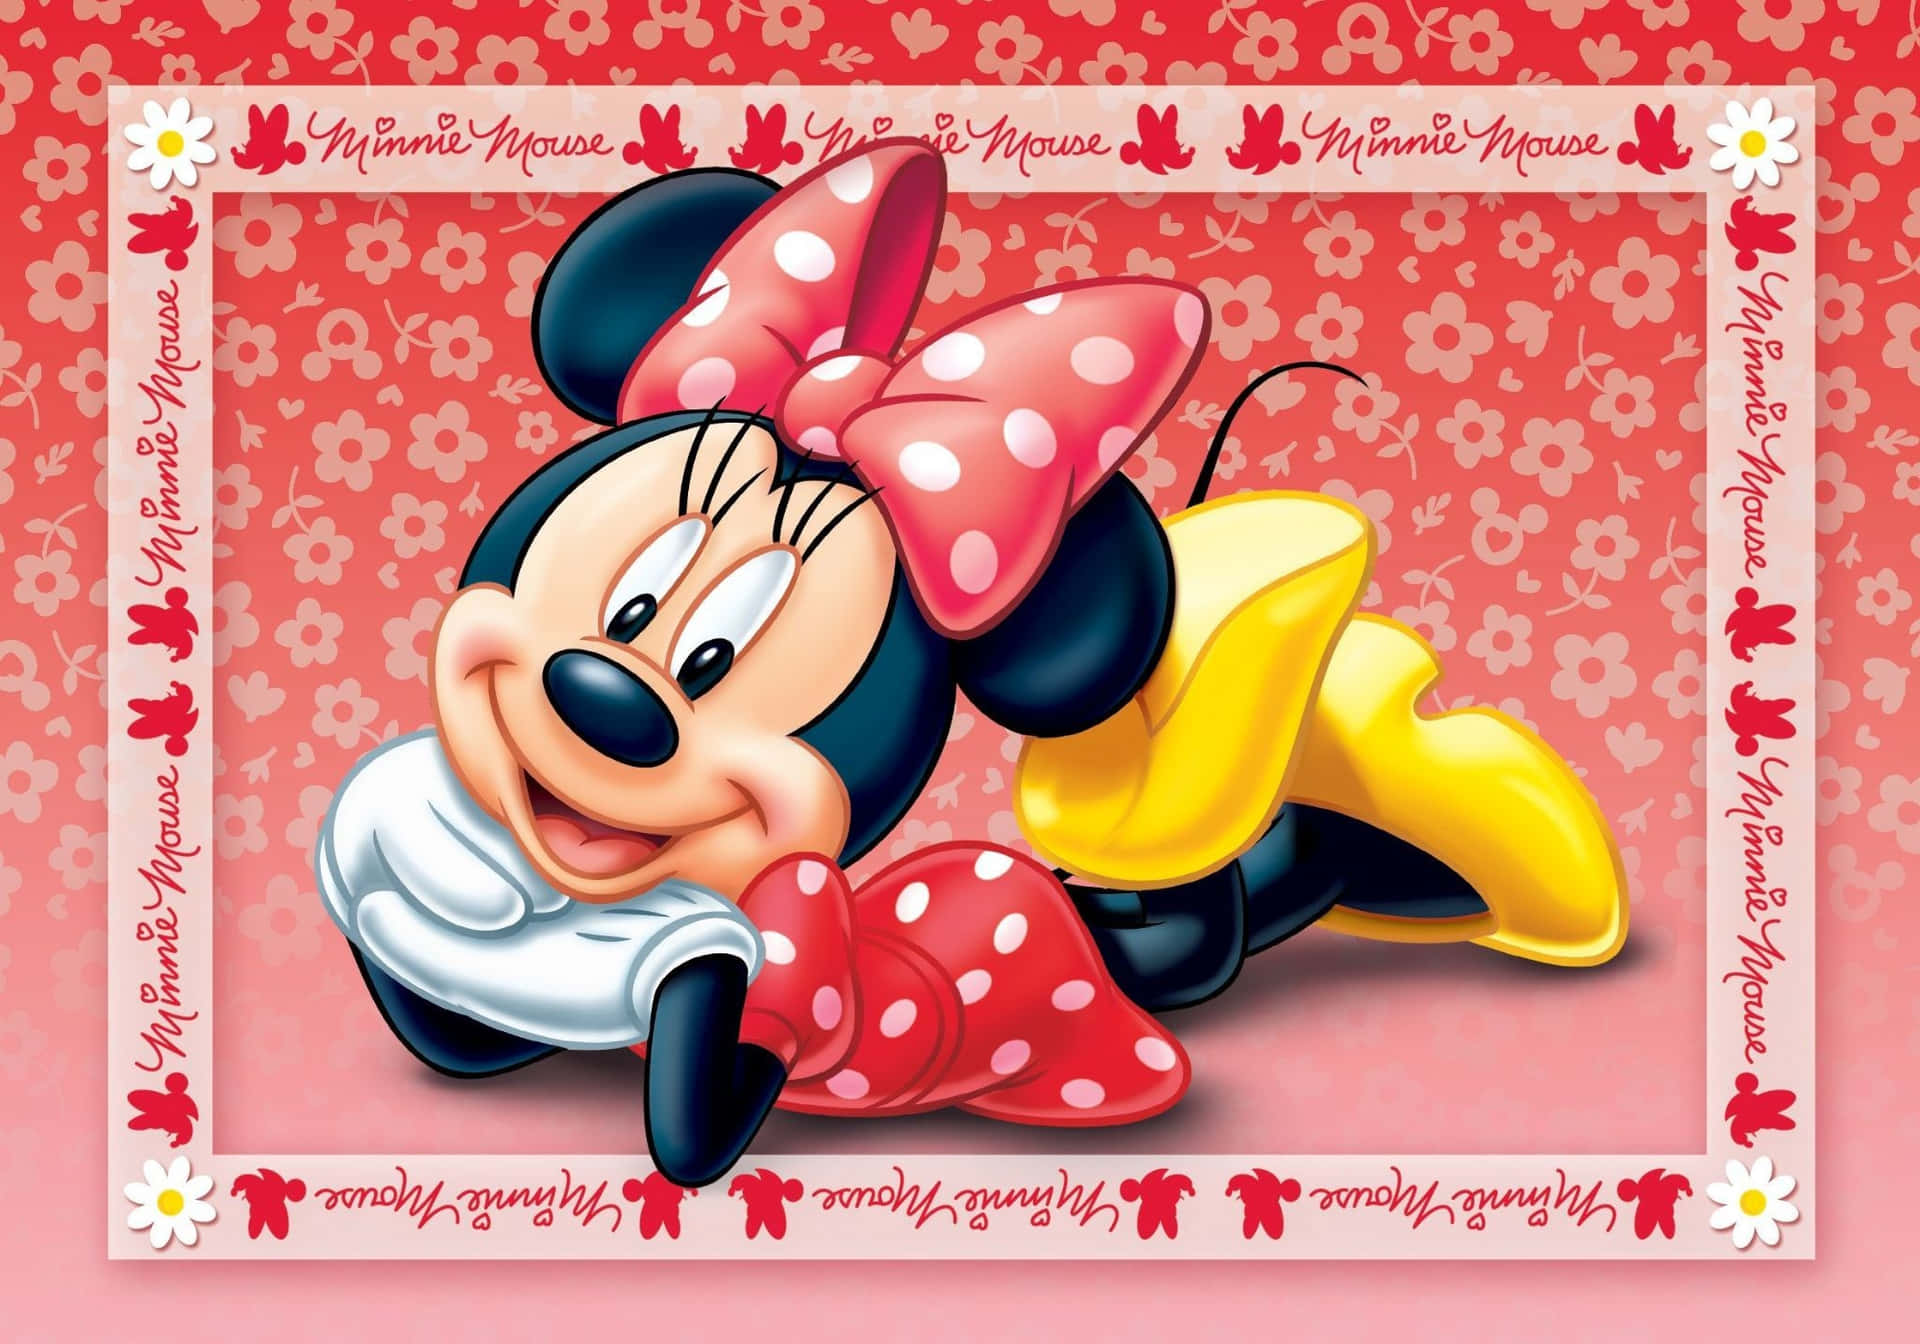 Abbiateuna Giornata Magica Con Minnie Mouse